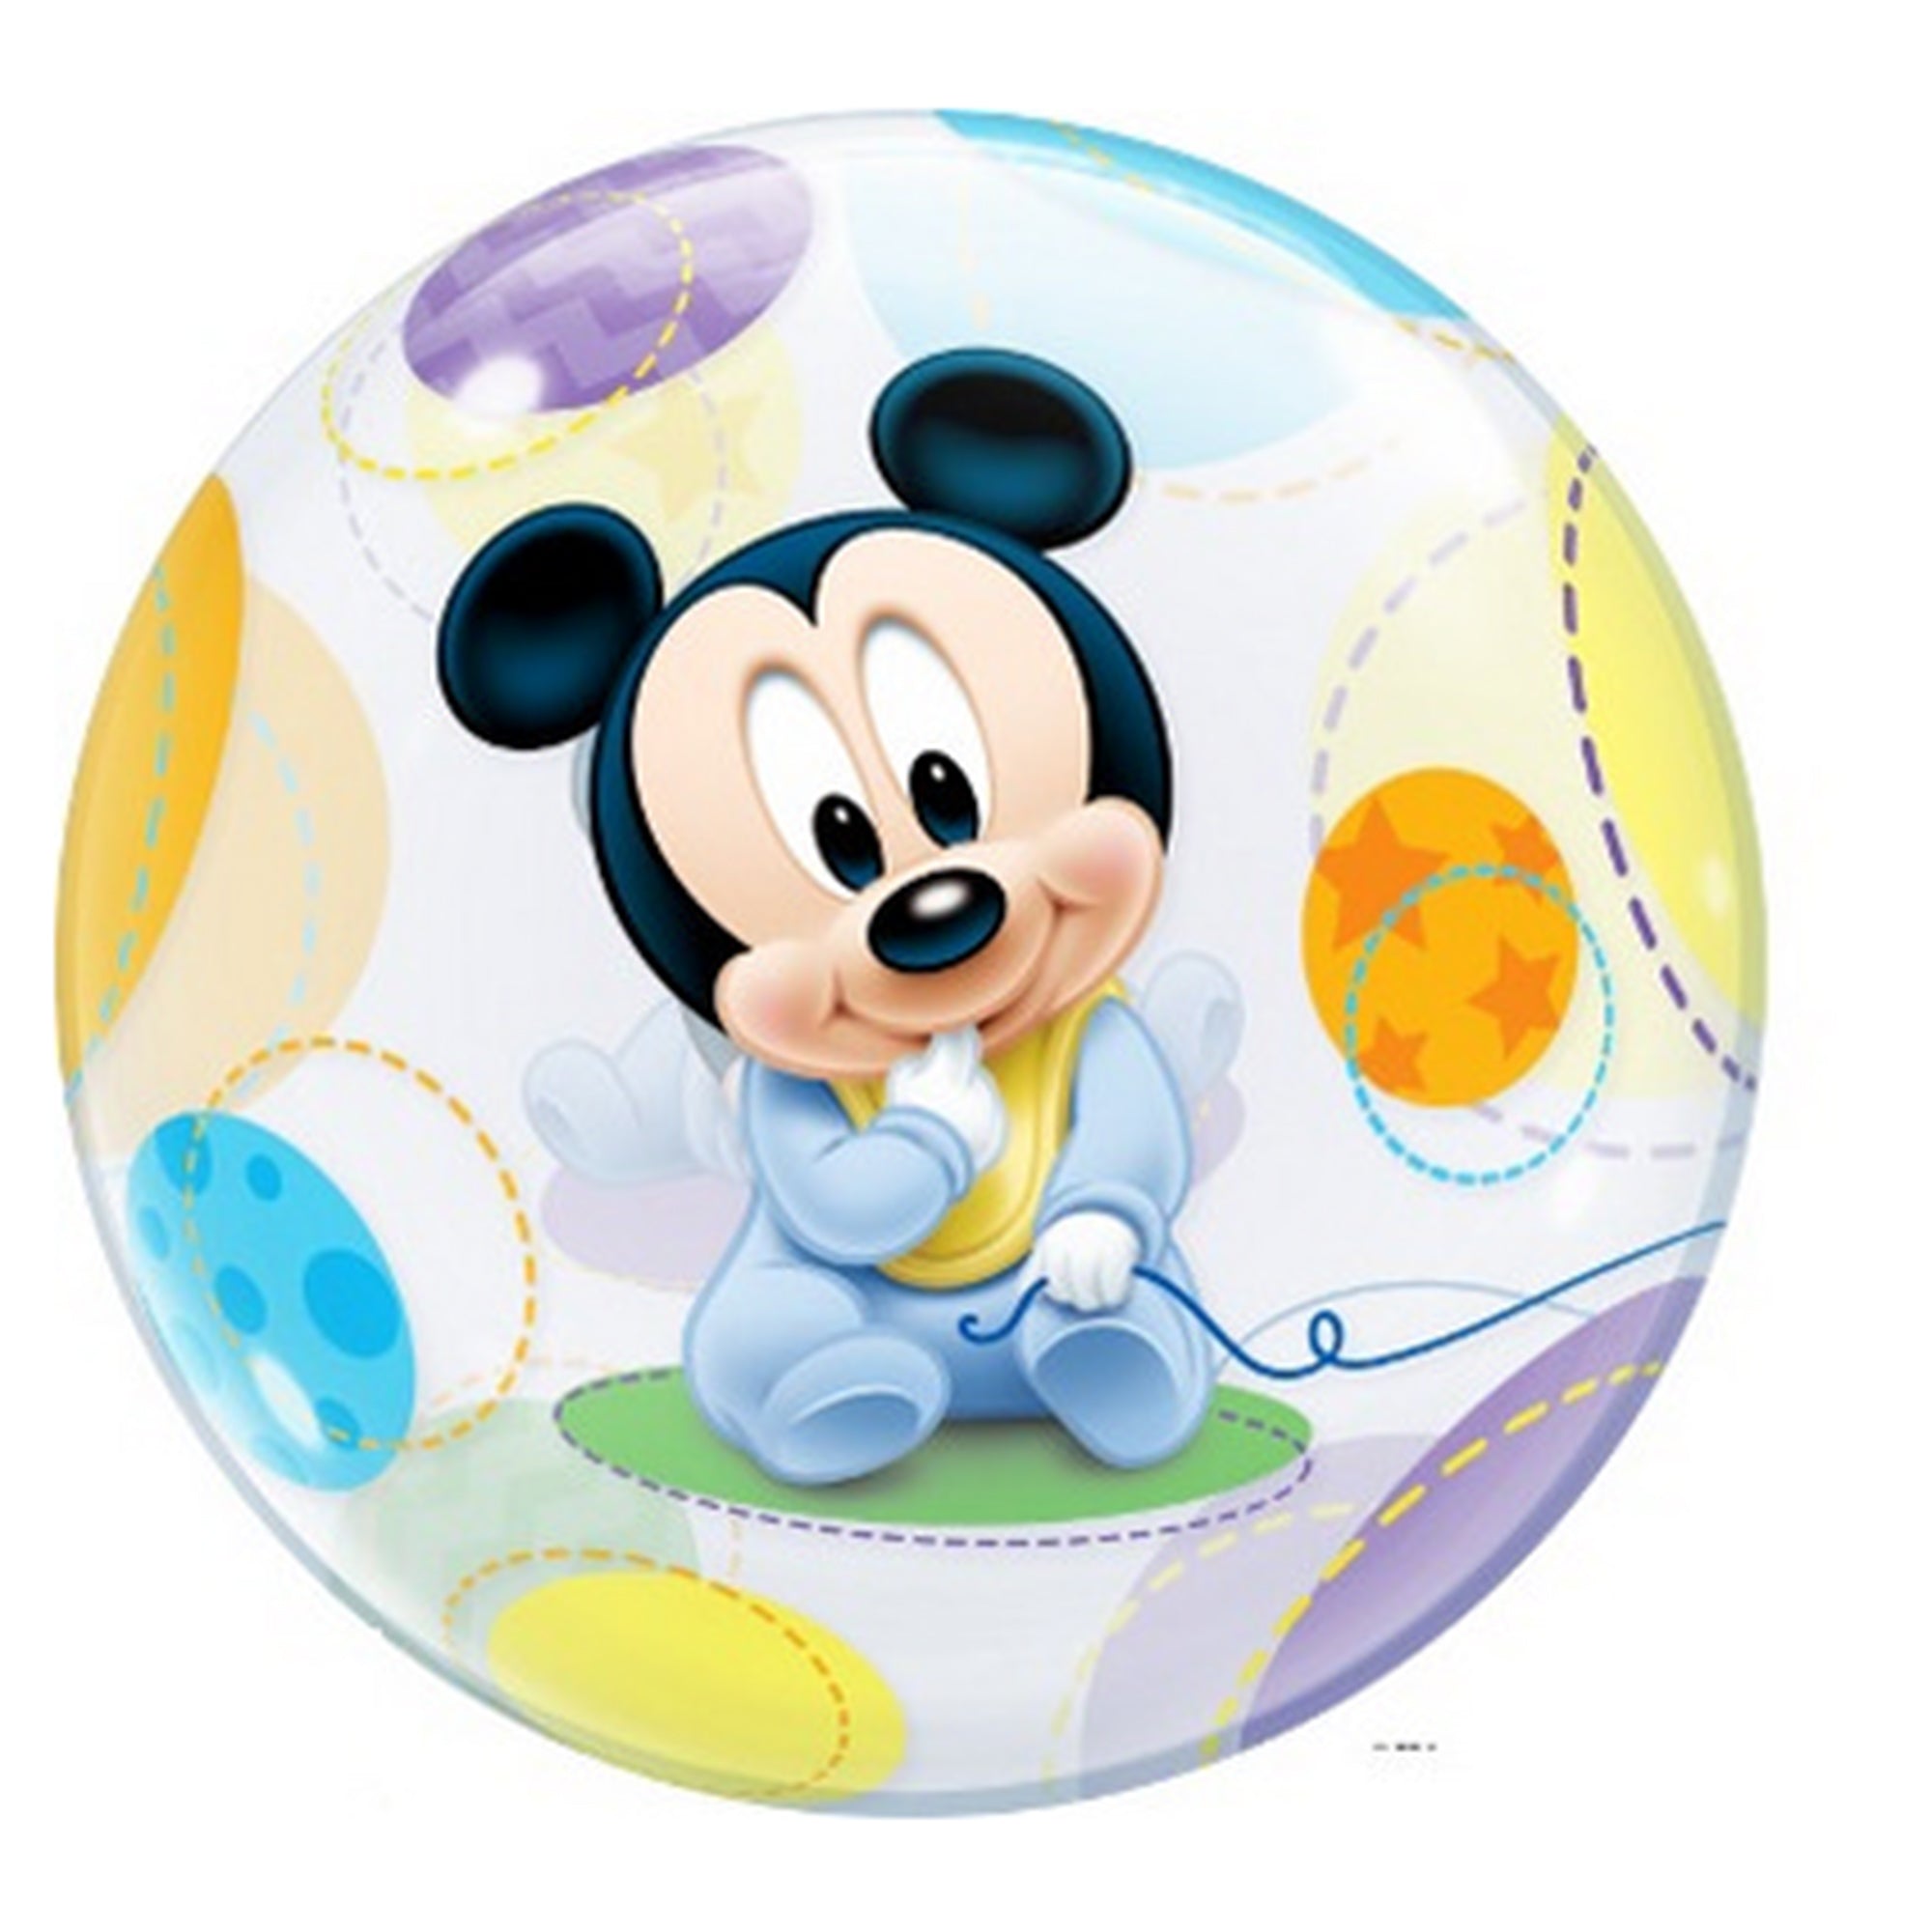 Pallone di plastica per feste di compleanno Disney Baby Mickey party 2007